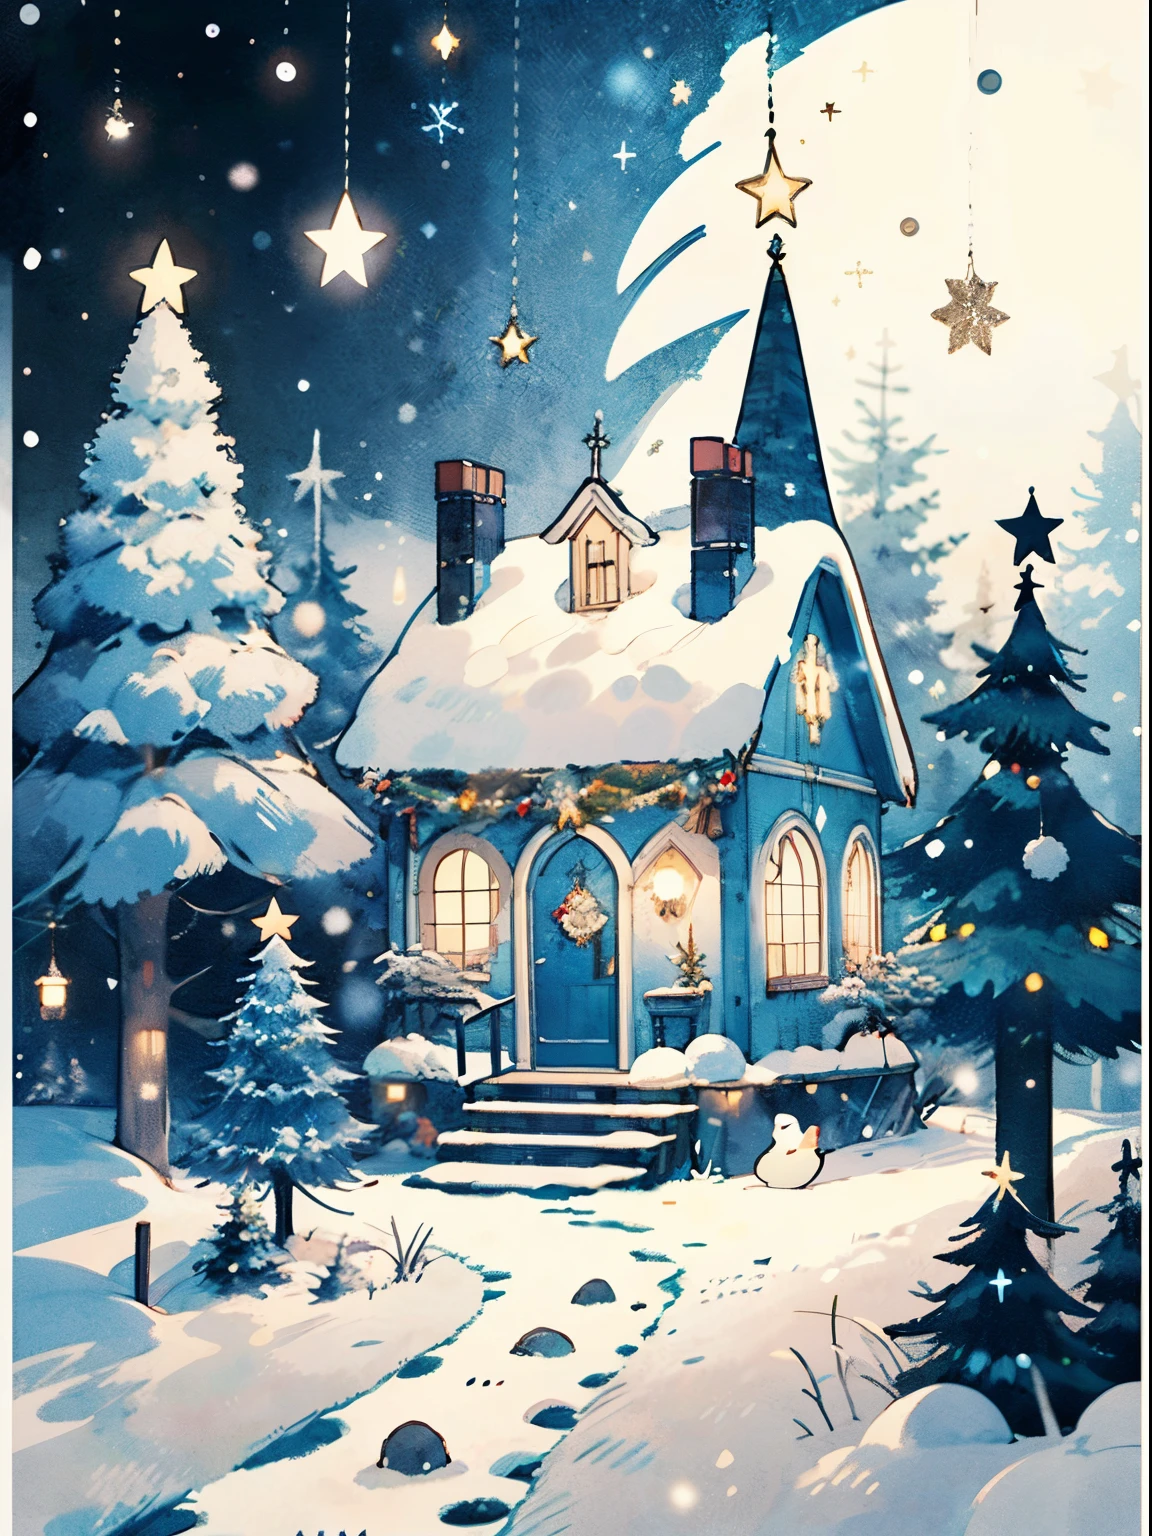 (((تحفة))),أفضل جودة, وايتتاون, السنة الروسية الجديدة, يحيي , لون مشرق, الثلج يتساقط, شجرة عيد الميلاد, balls on the شجرة عيد الميلاد, كوخ في الغابة, ليلة رأس السنة الجديدة